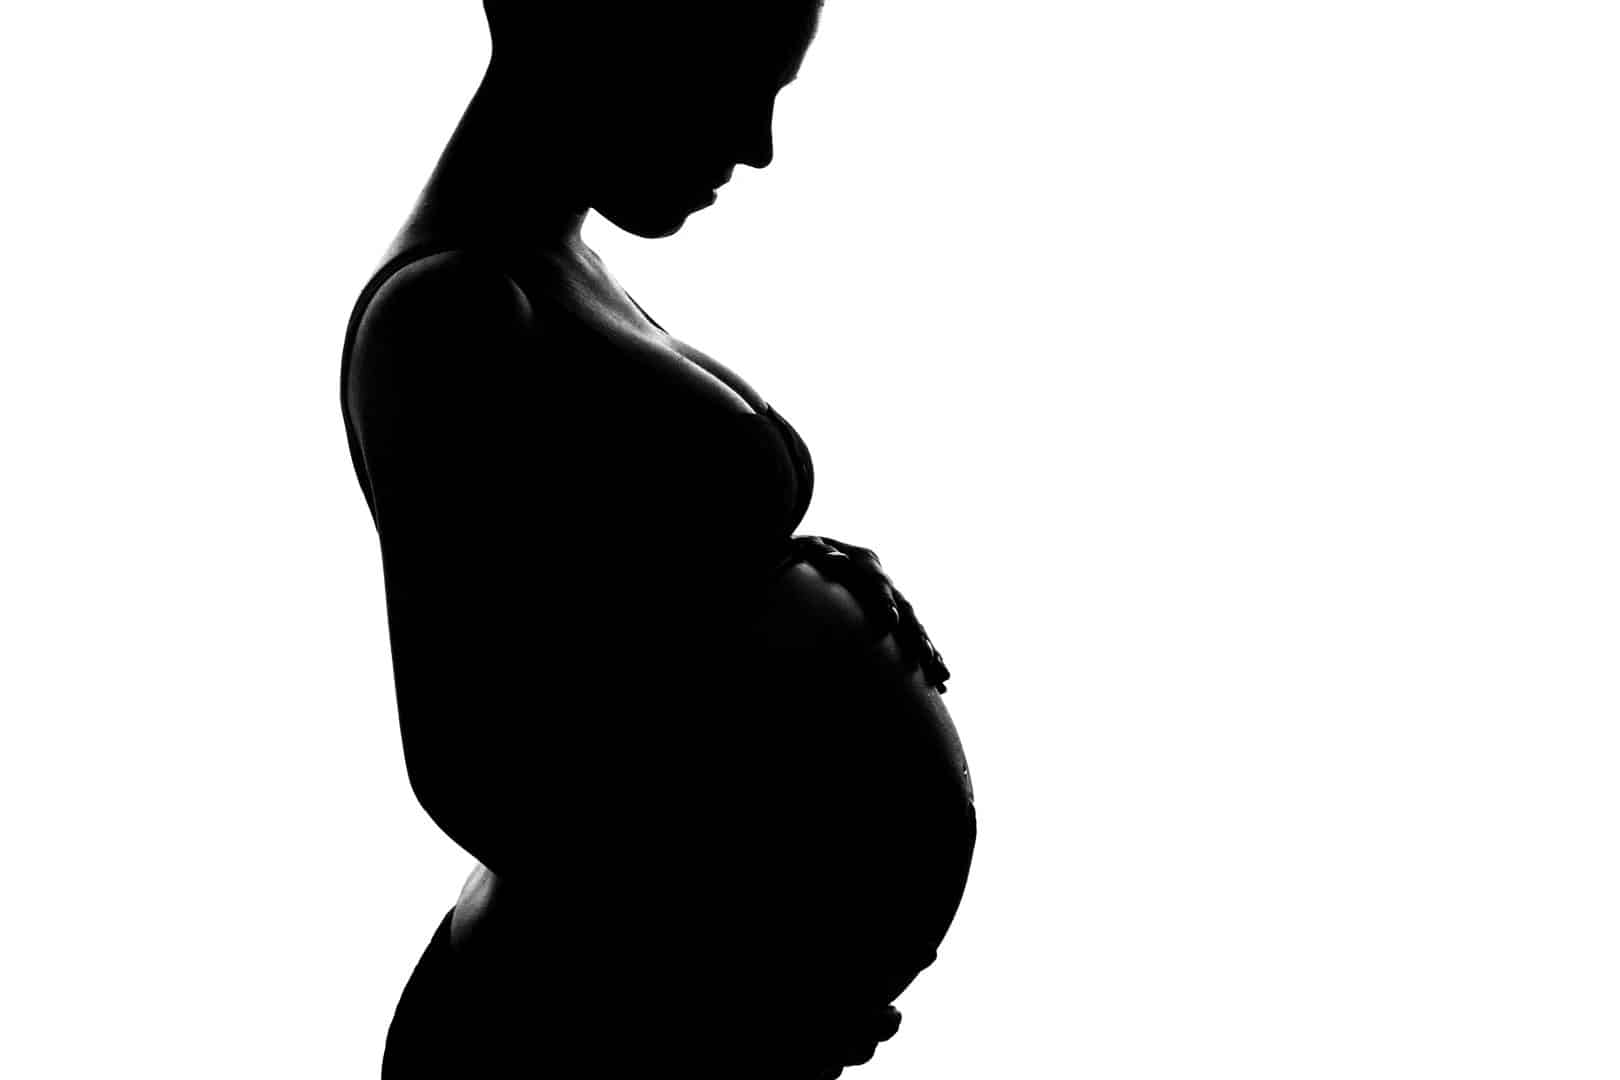 Sonhar com gravidez - O que isso pode significar?